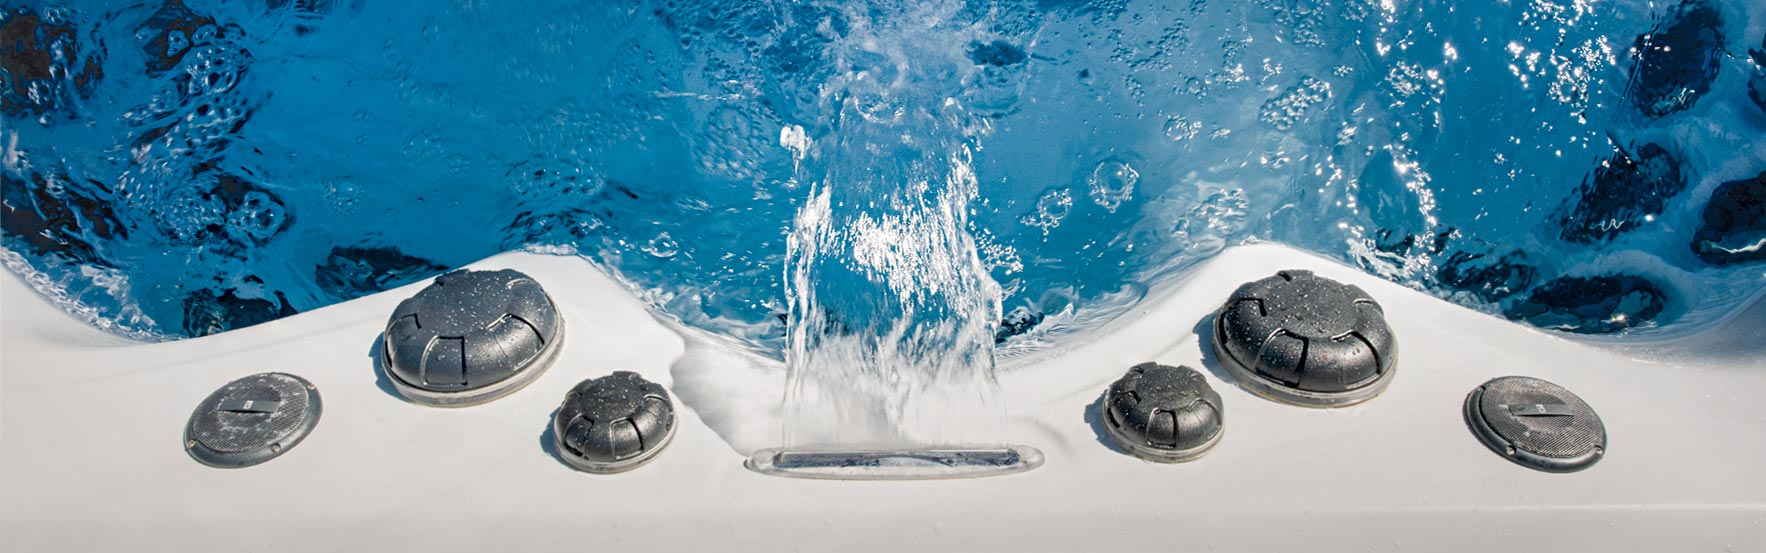 energy efficient swim spa